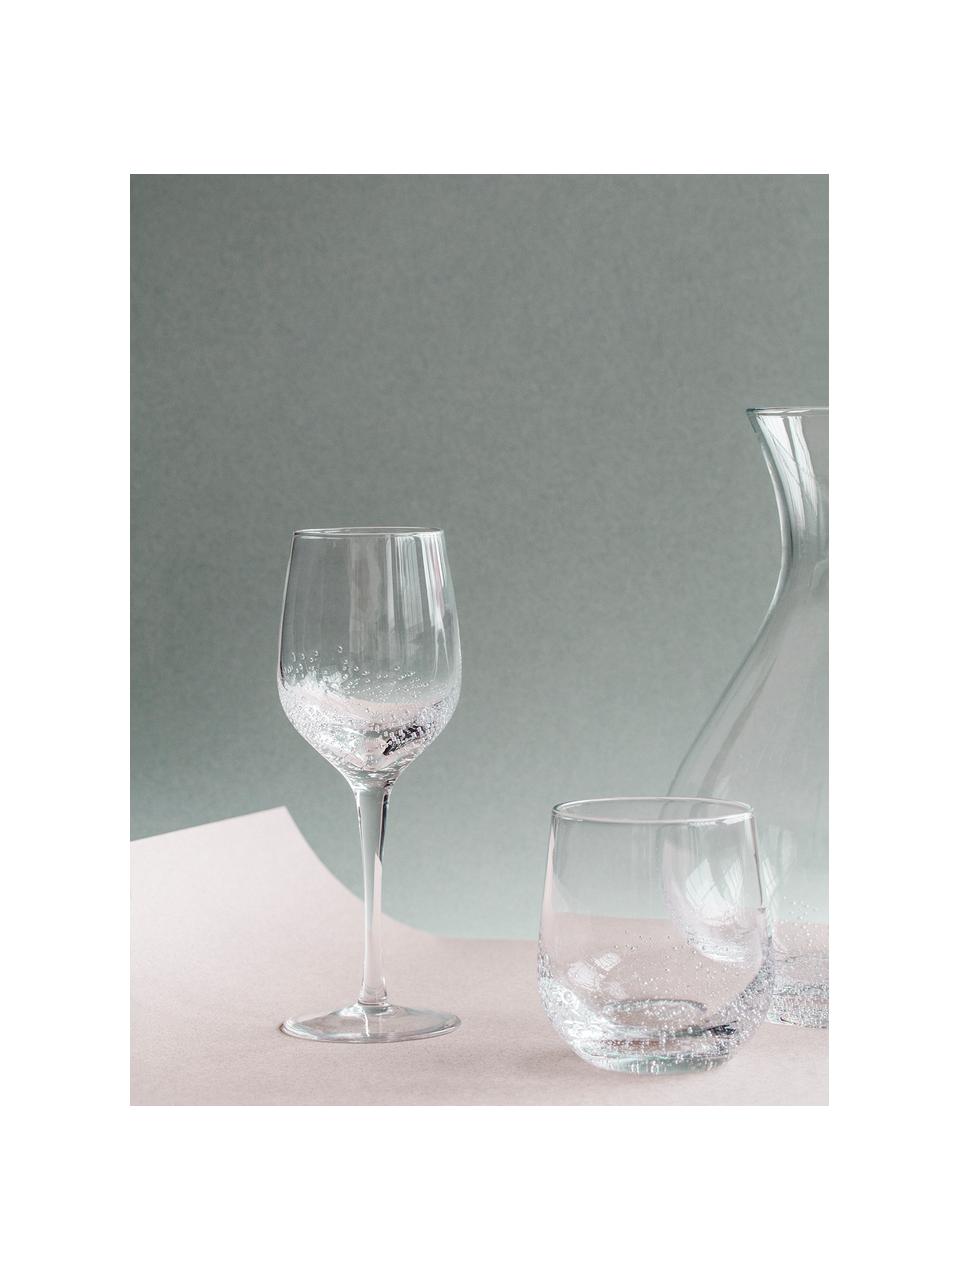 Kieliszek do wina białego ze szkła dmuchanego Bubble, 4 szt., Szkło dmuchane, Transparentny z bąbelkami powietrza, Ø 8 x W 21 cm, 250 ml